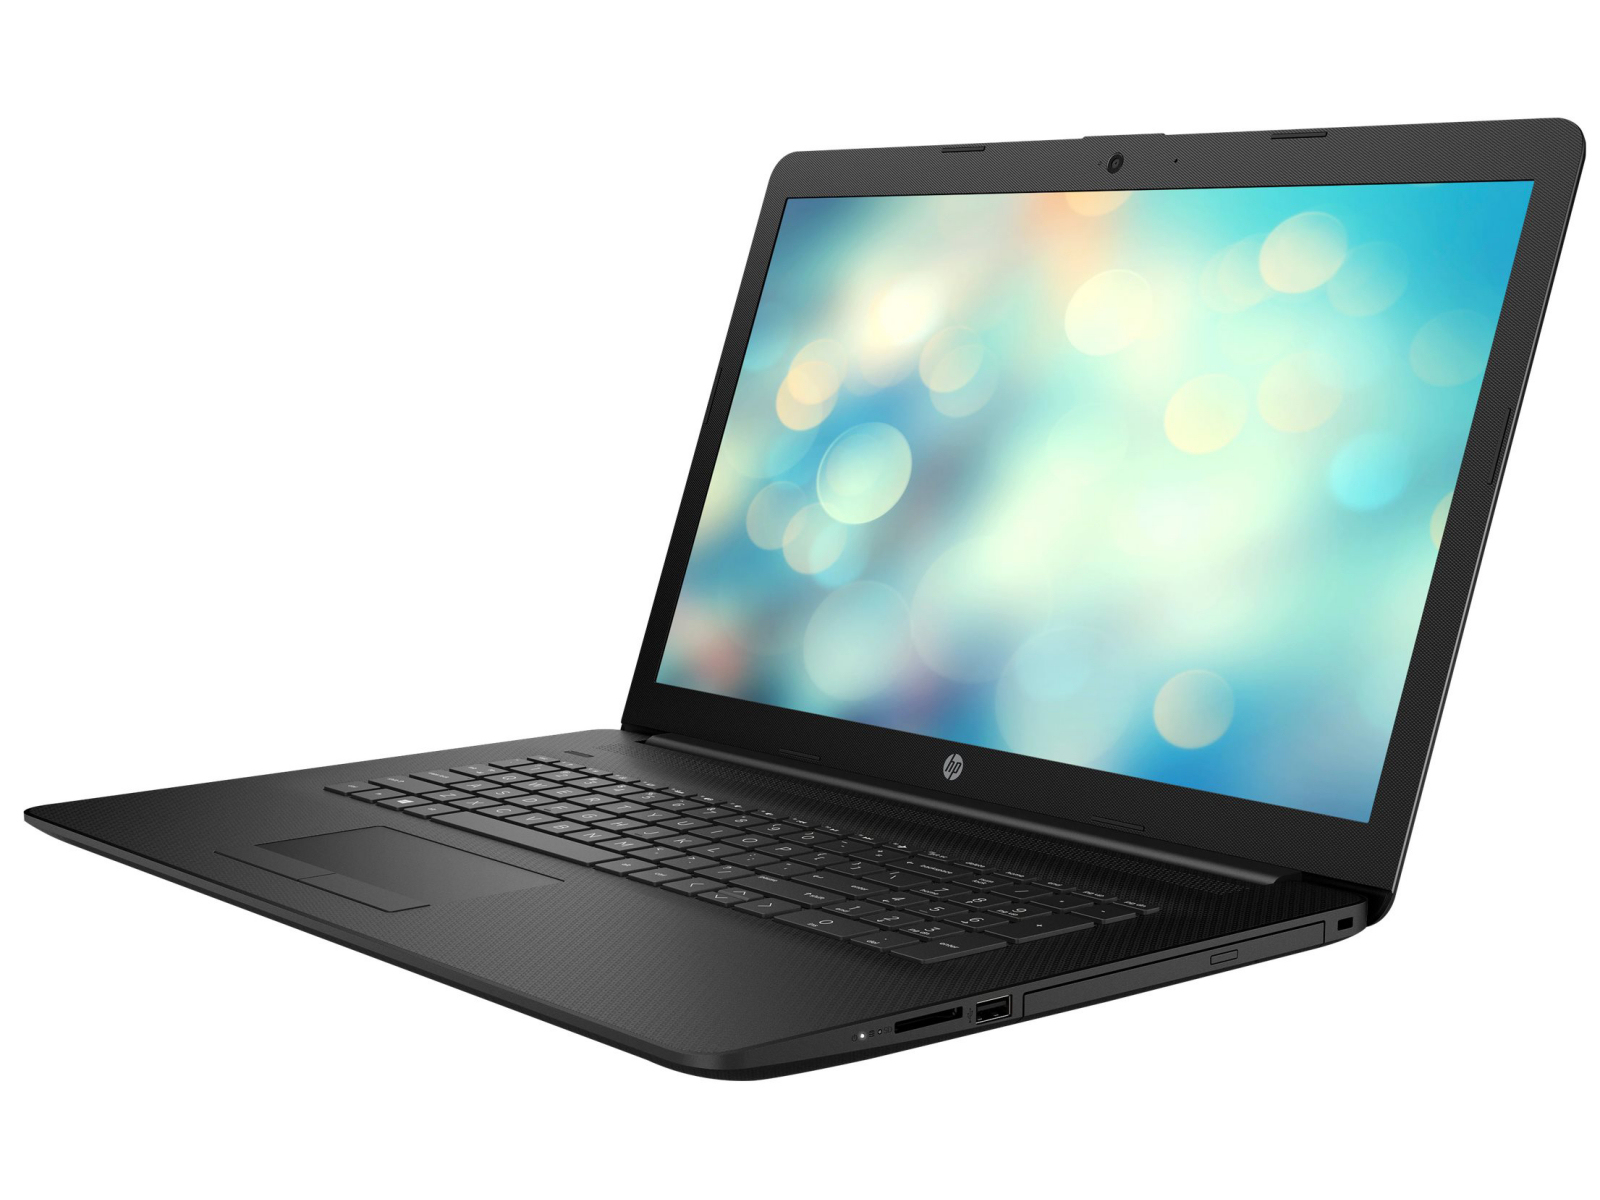 Review de la laptop HP 17: Un simple portátil de oficina con una